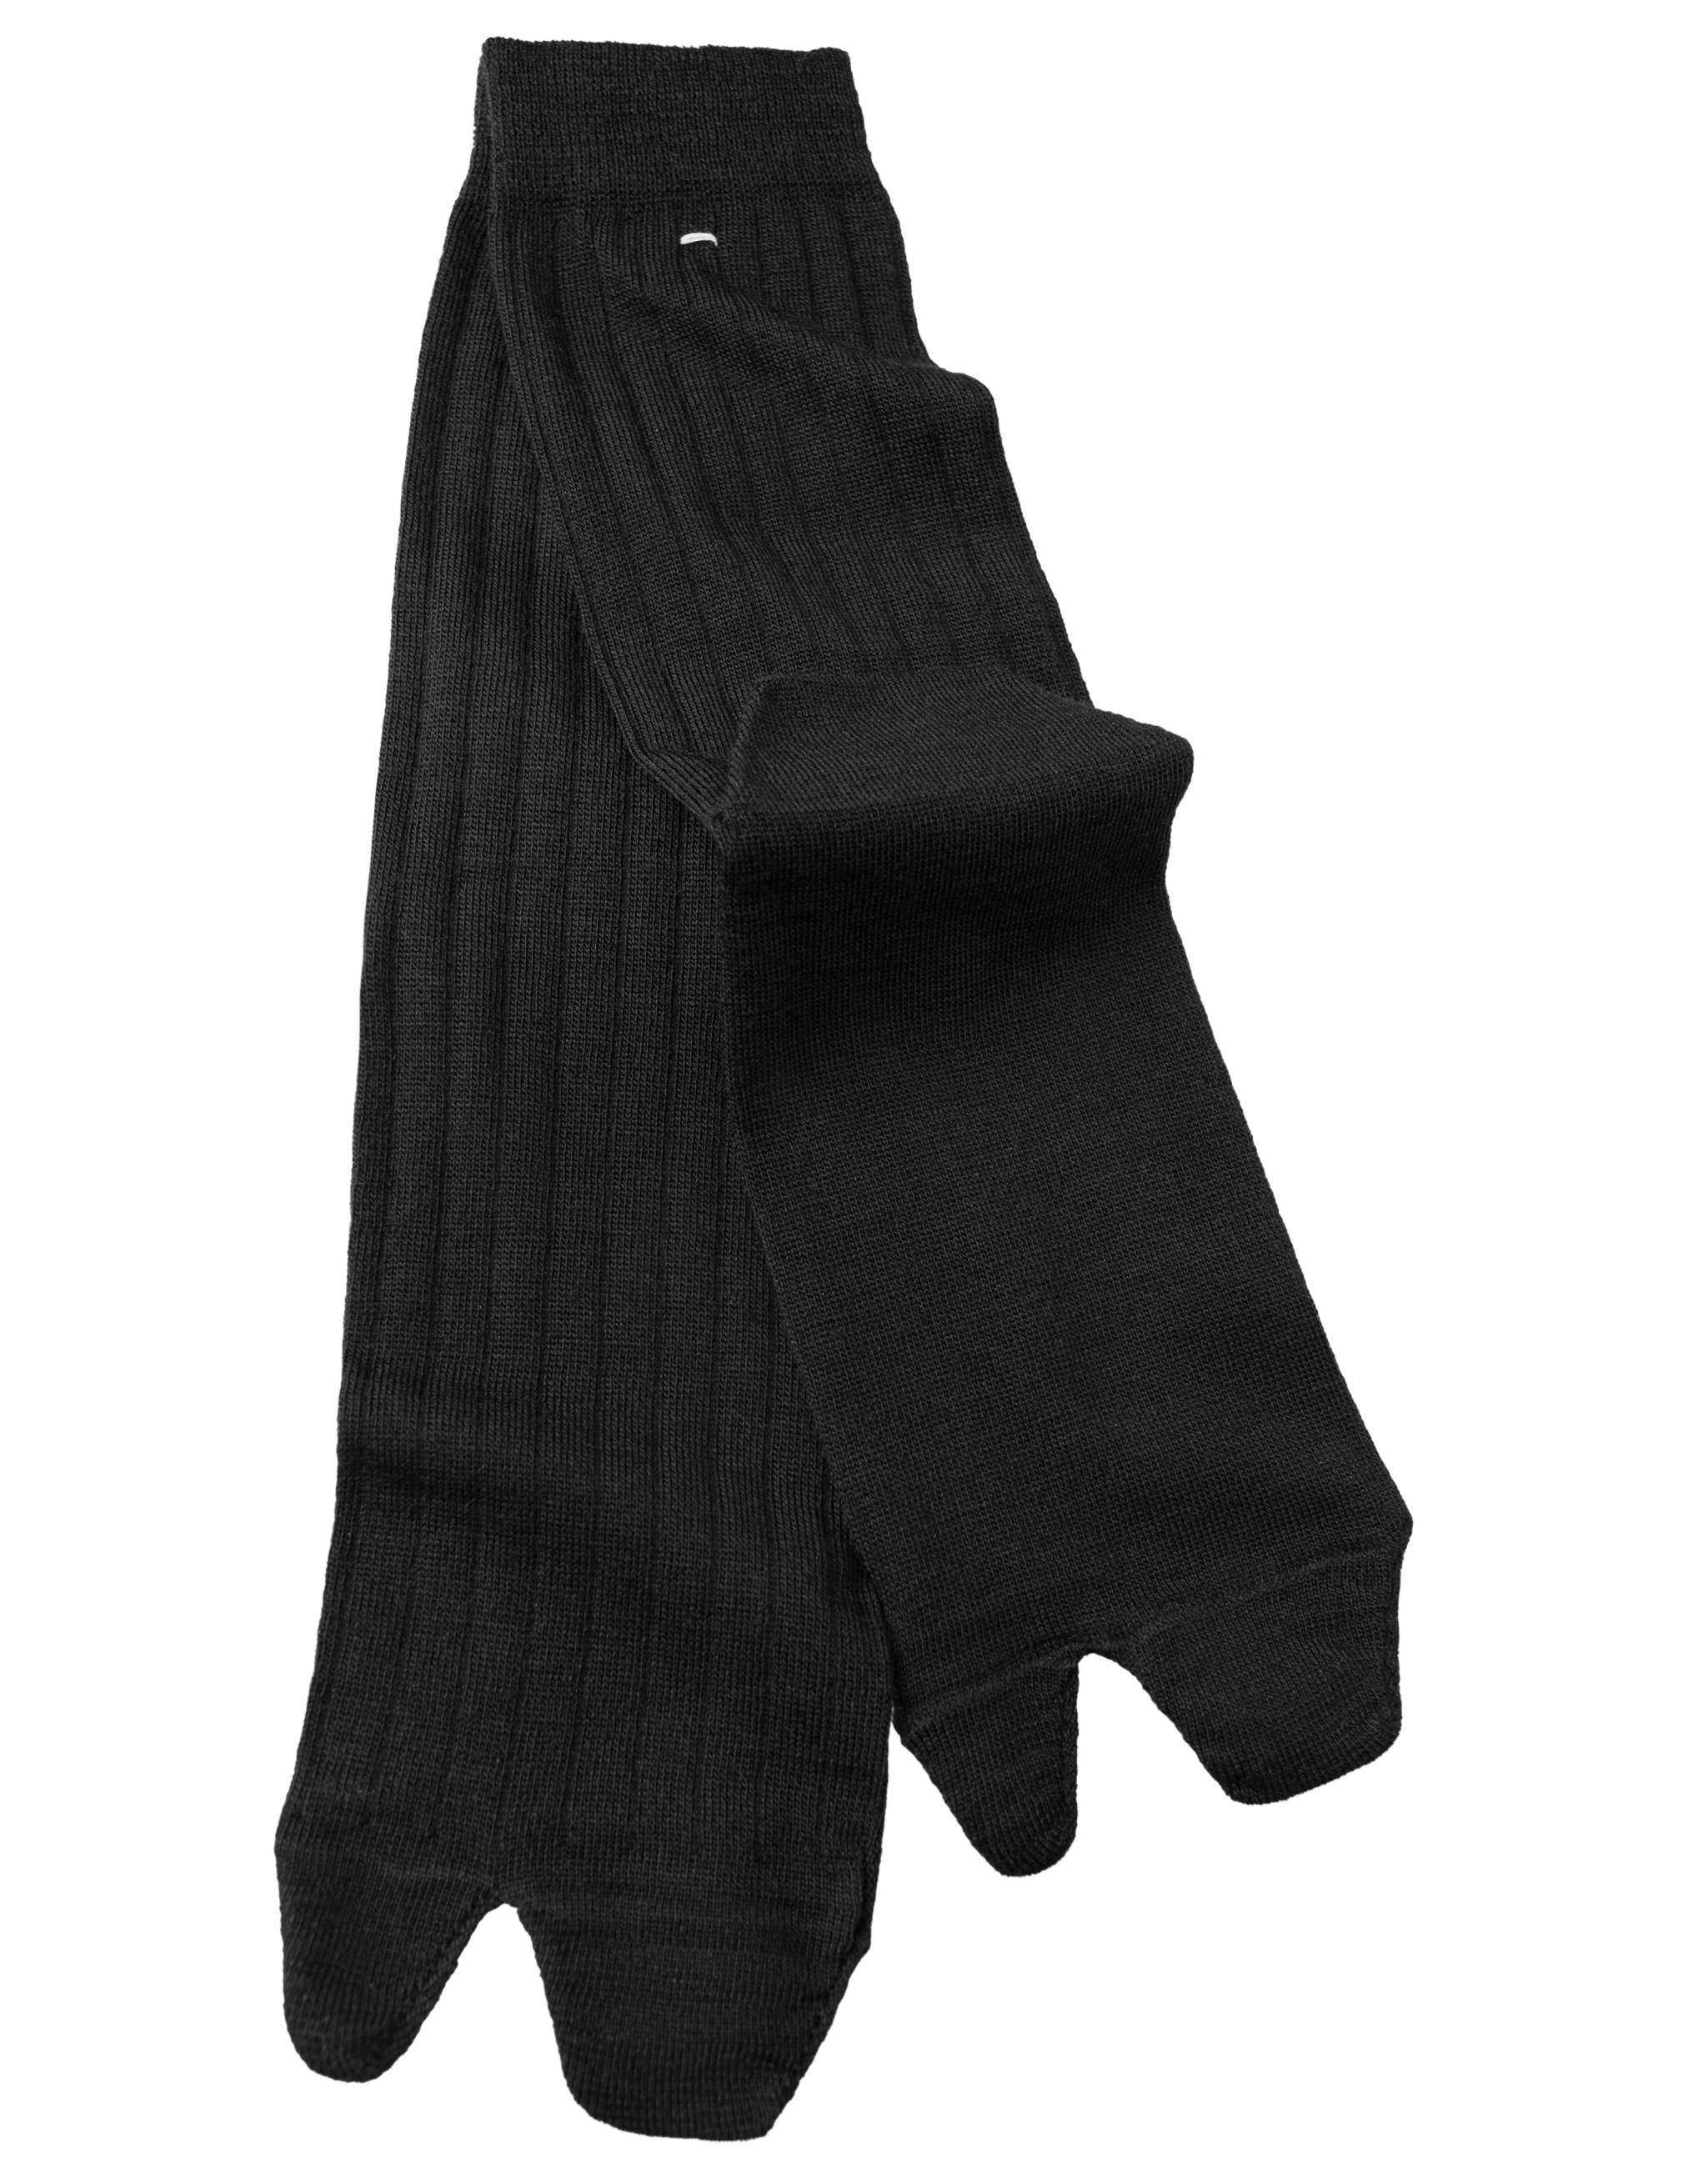 Черные носки Tabi Maison Margiela SI0TL0001/S17867/900, размер S;M SI0TL0001/S17867/900 - фото 2